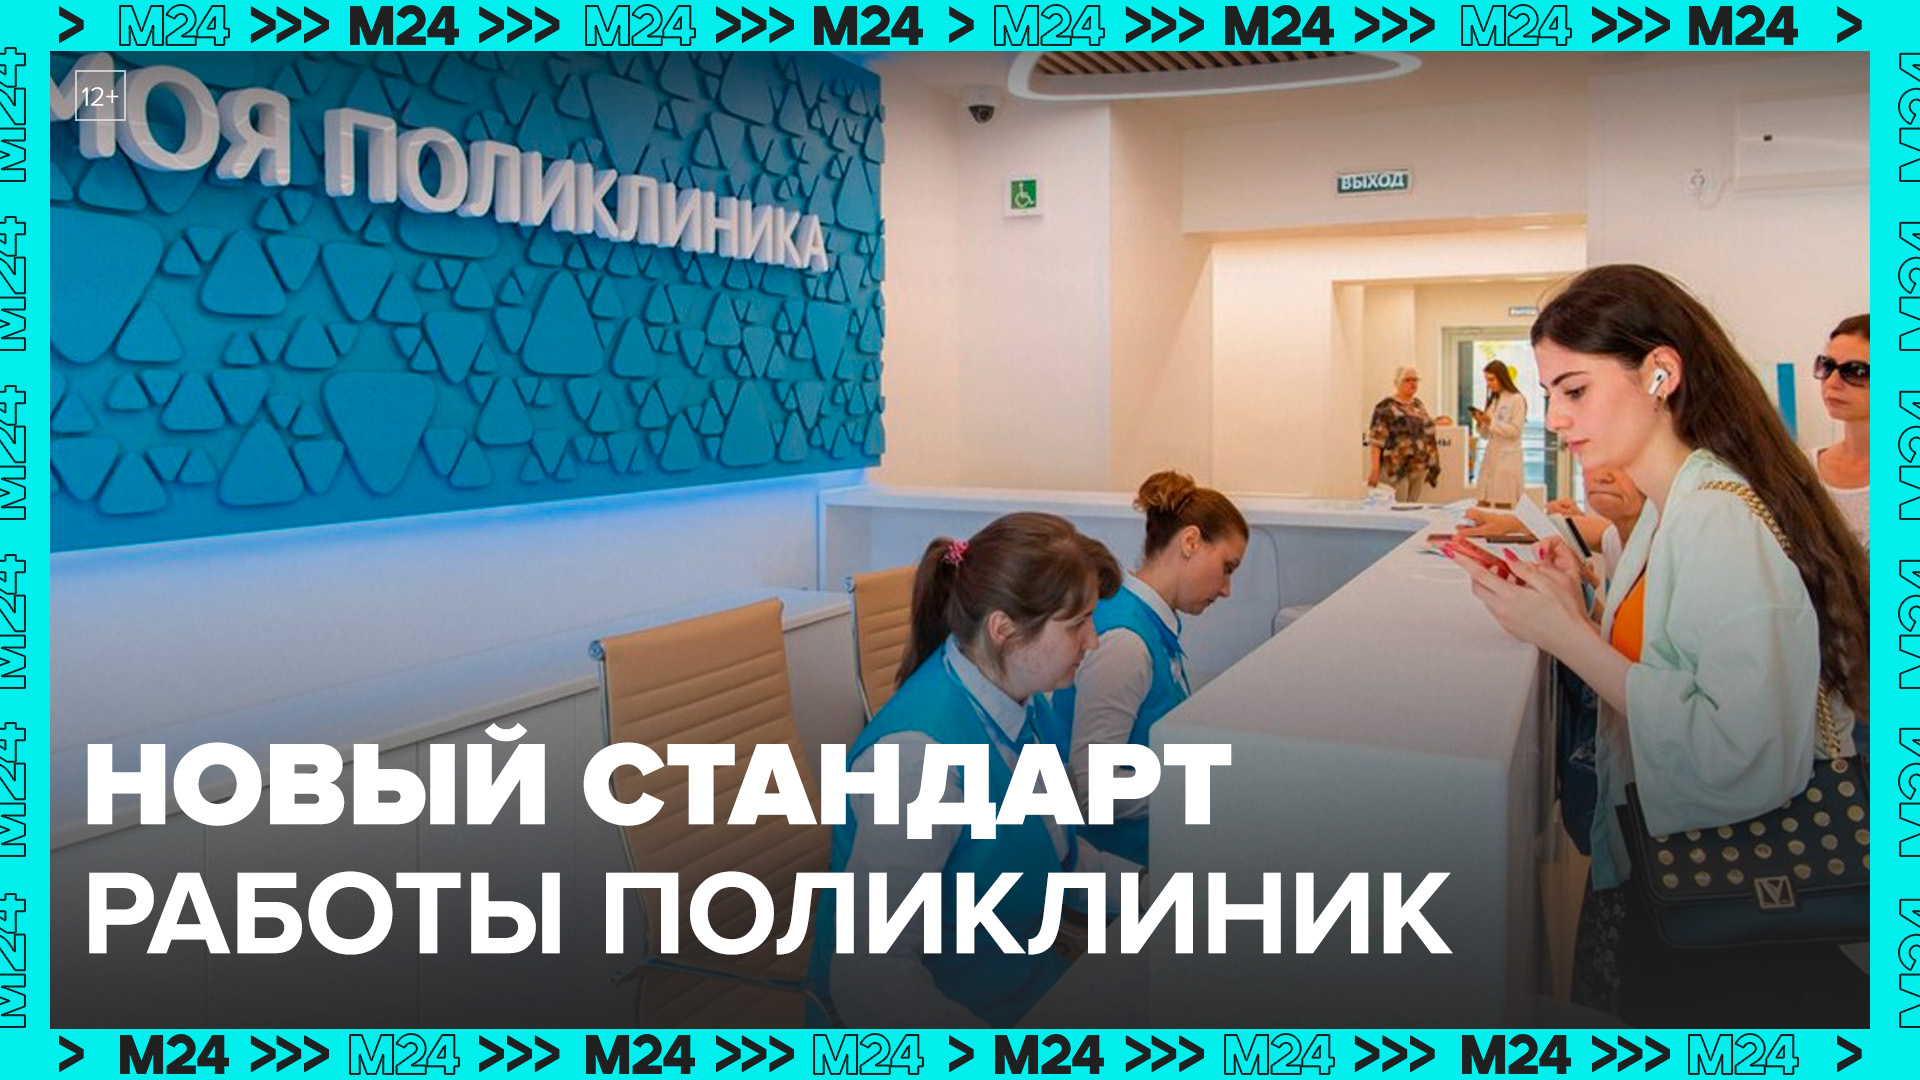 Сергей Собянин рассказал о строительстве поликлиник по новому стандарту - Москва 24